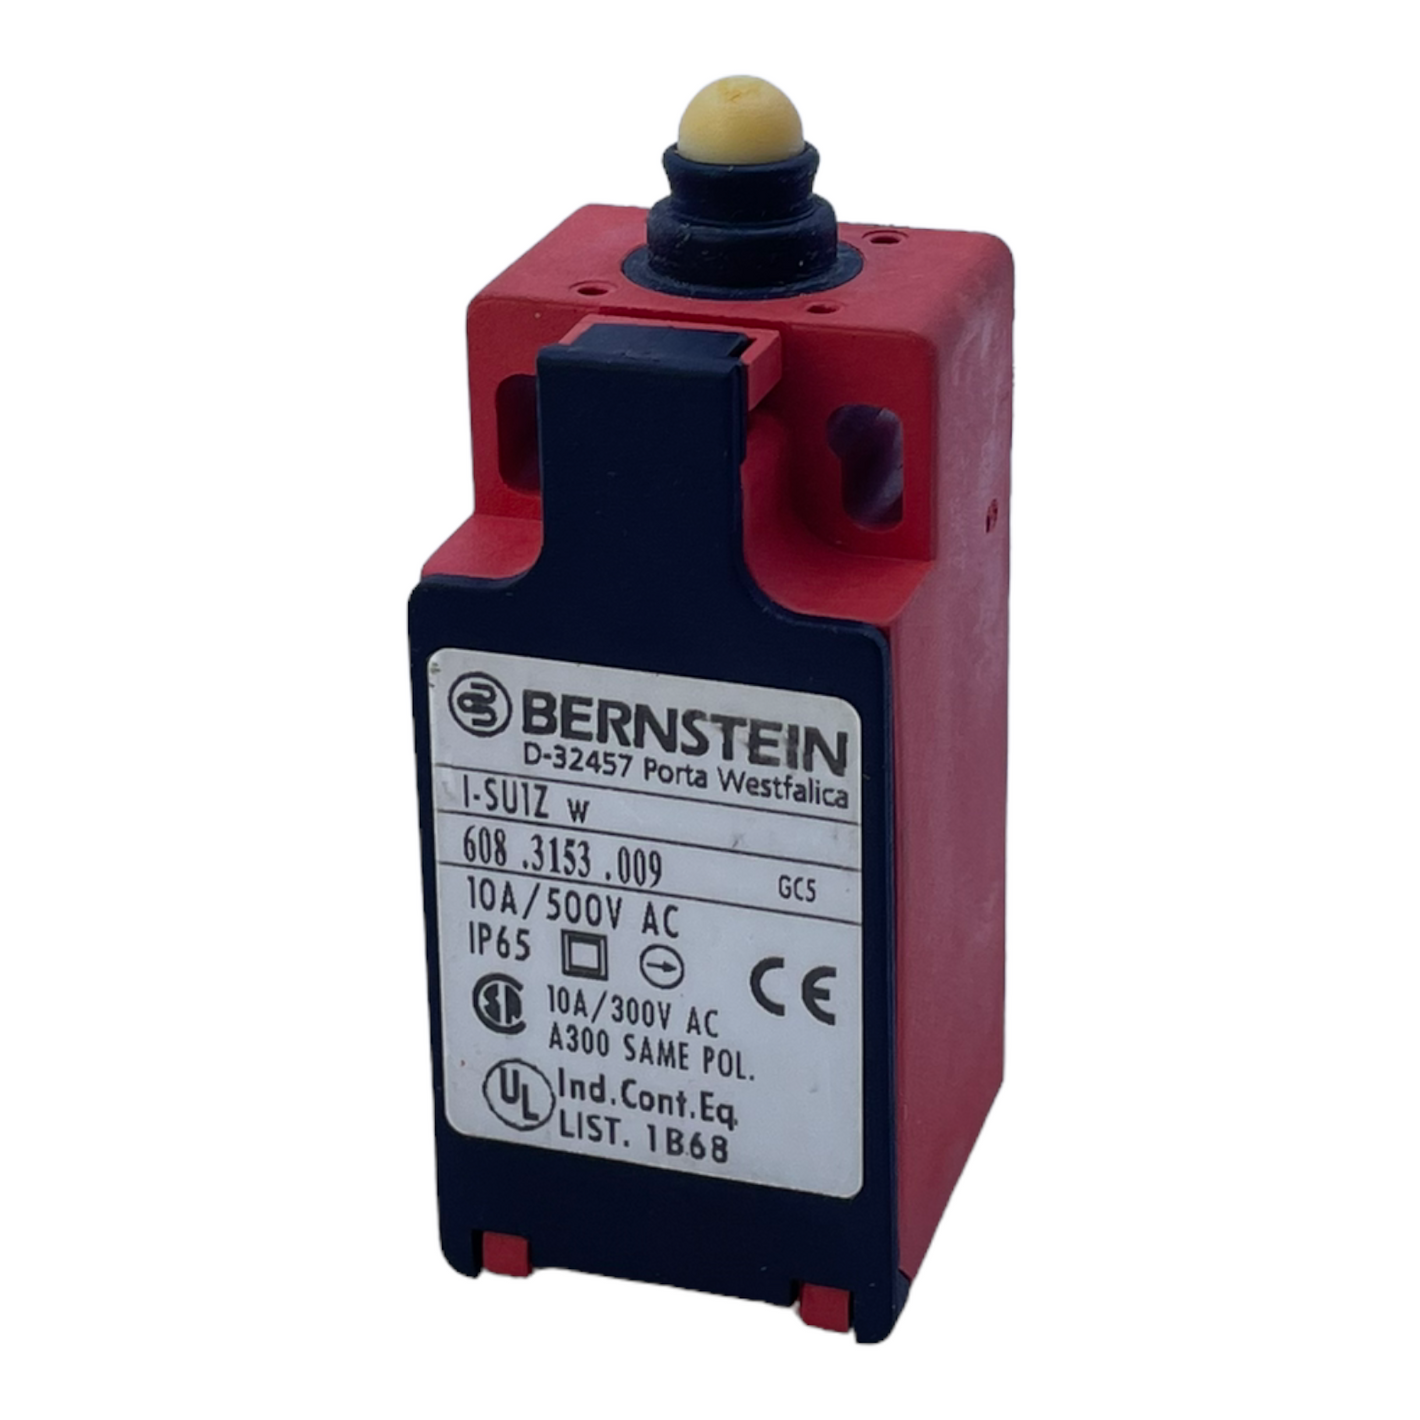 Bernstein I-SU1Z w position switch limit switch for industrial use 